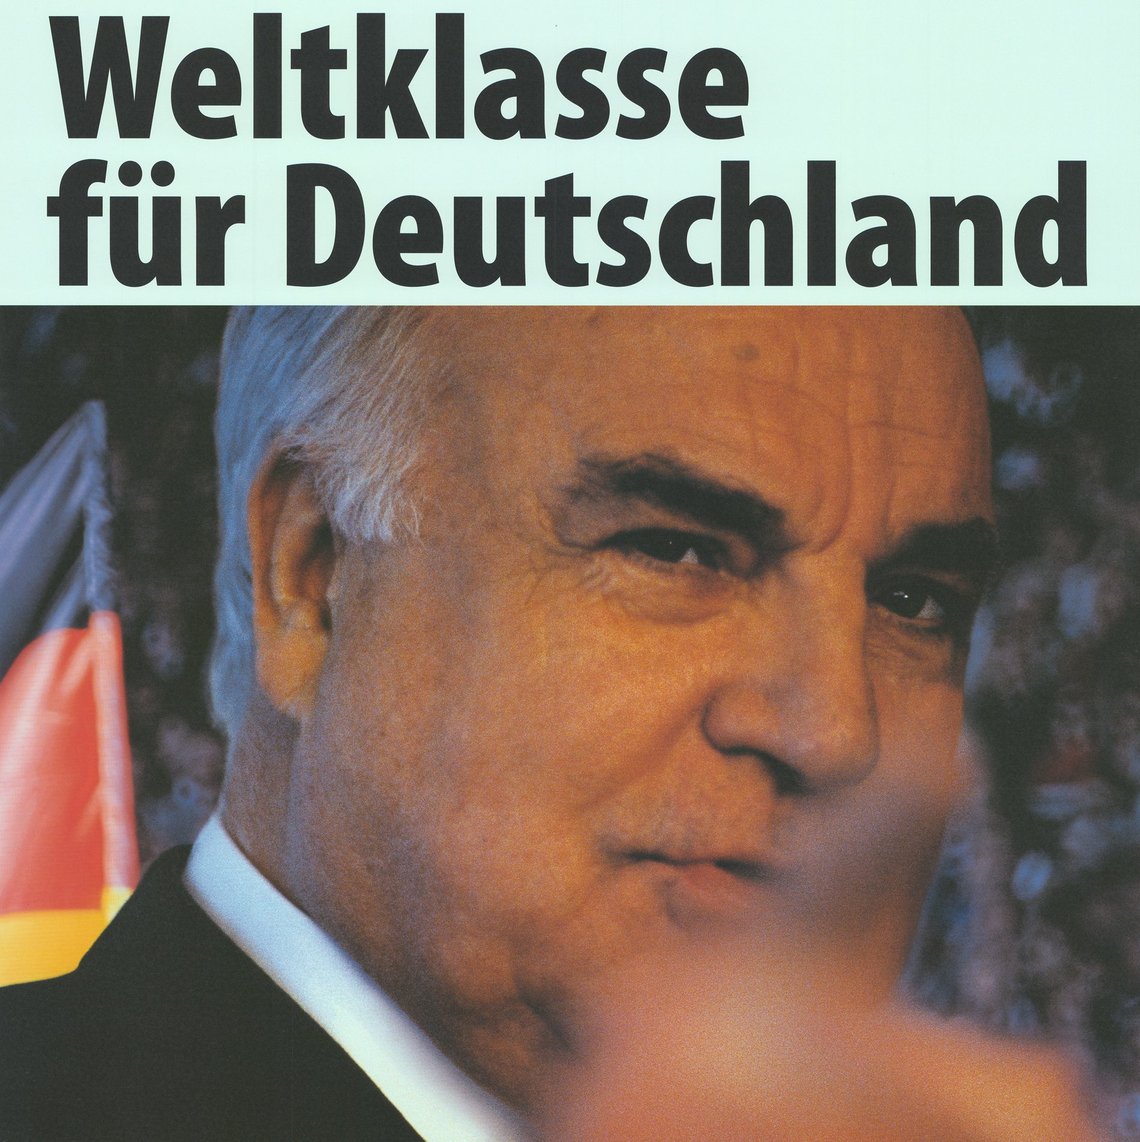 Plakat zur Bundestagswahl 1998 mit Helmut Kohl und Aufschrift "Weltklasse für Deutschland"